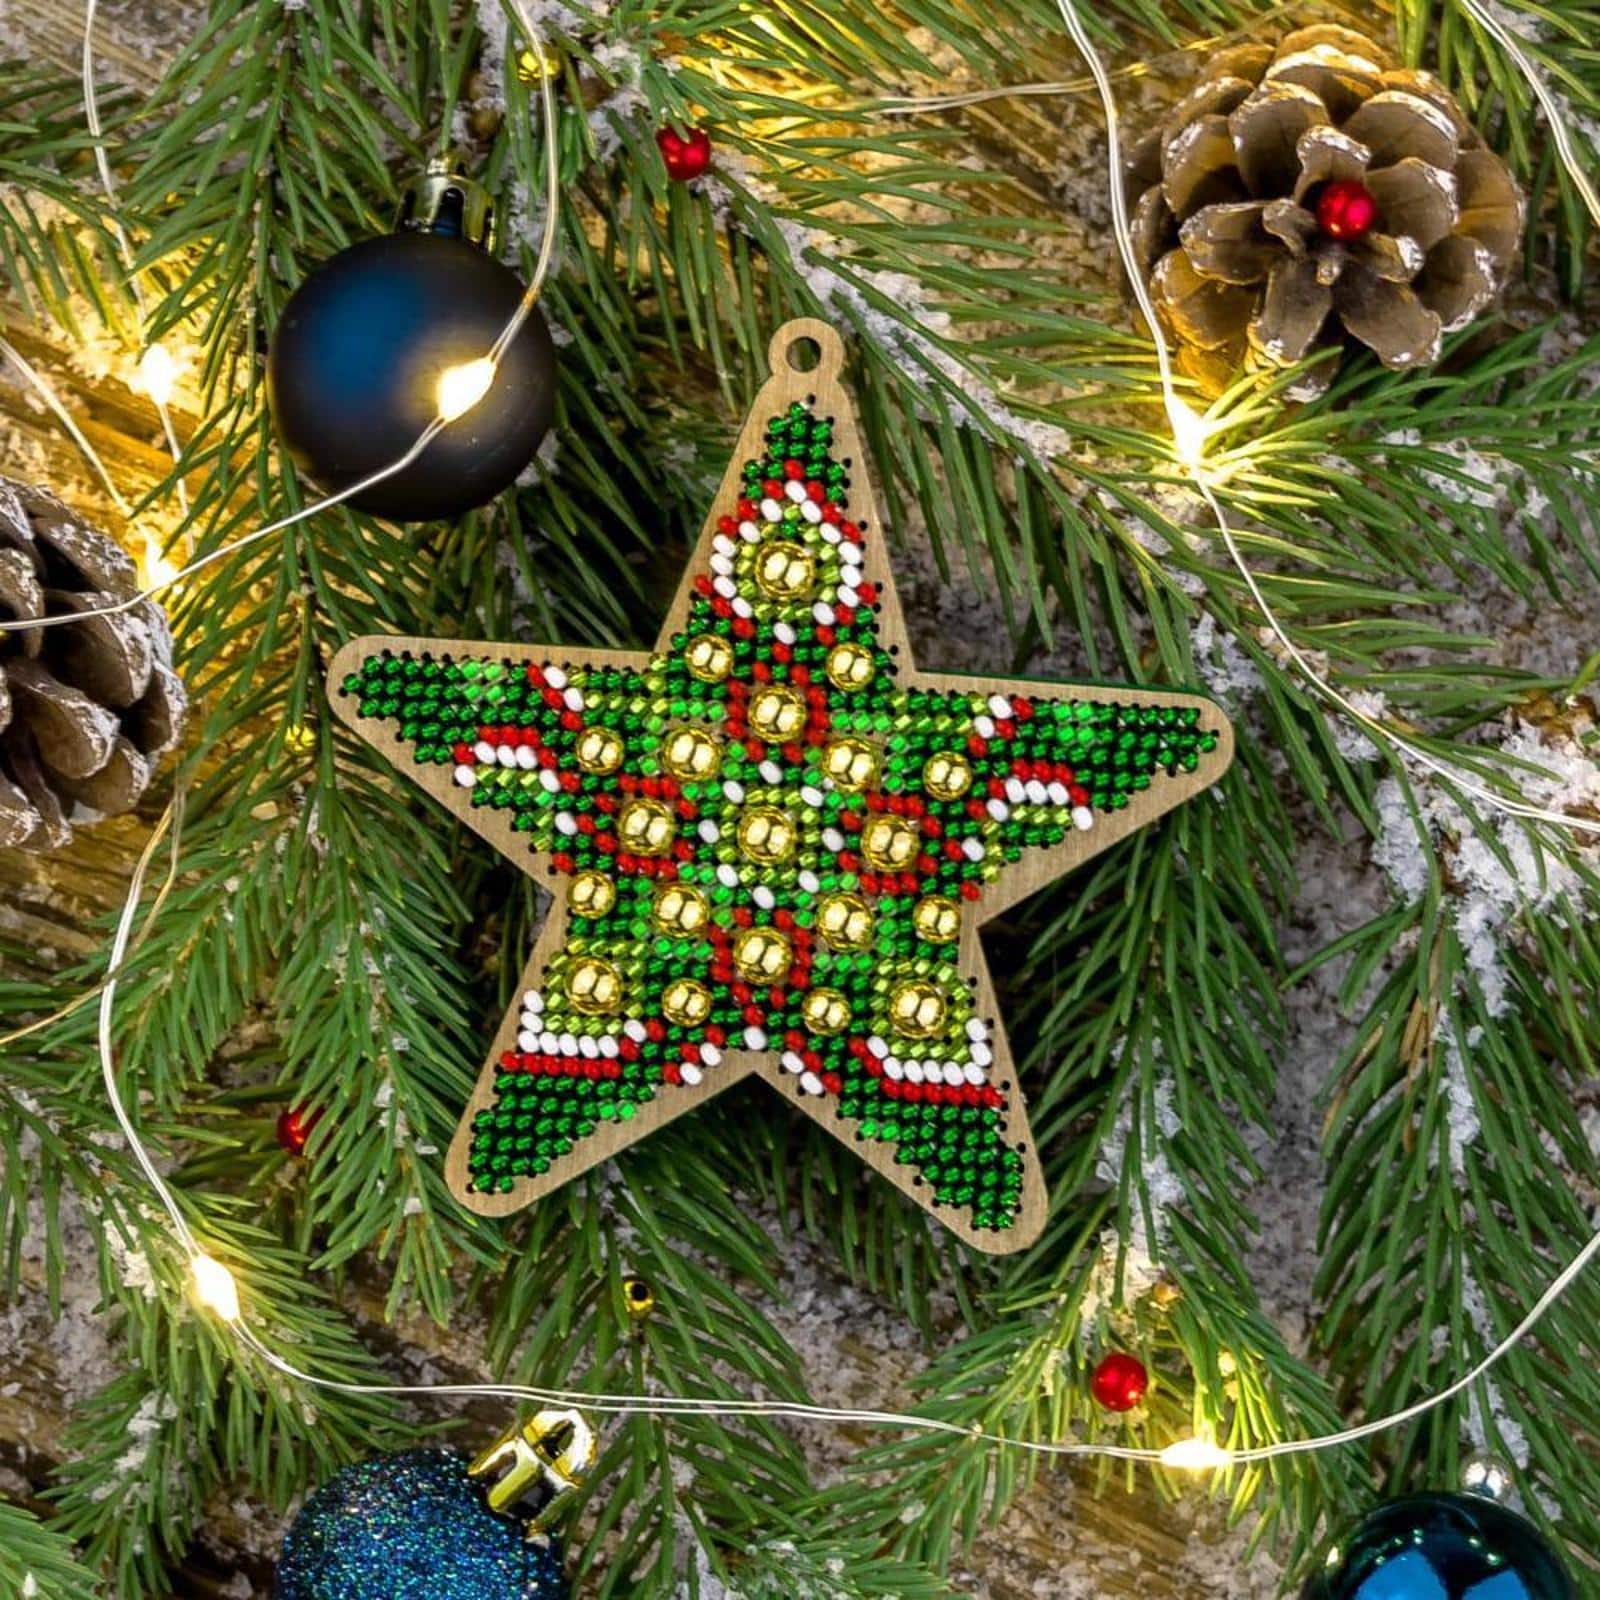 Wonderland Crafts Christmas Star Bead Embroidery on Wood Kit